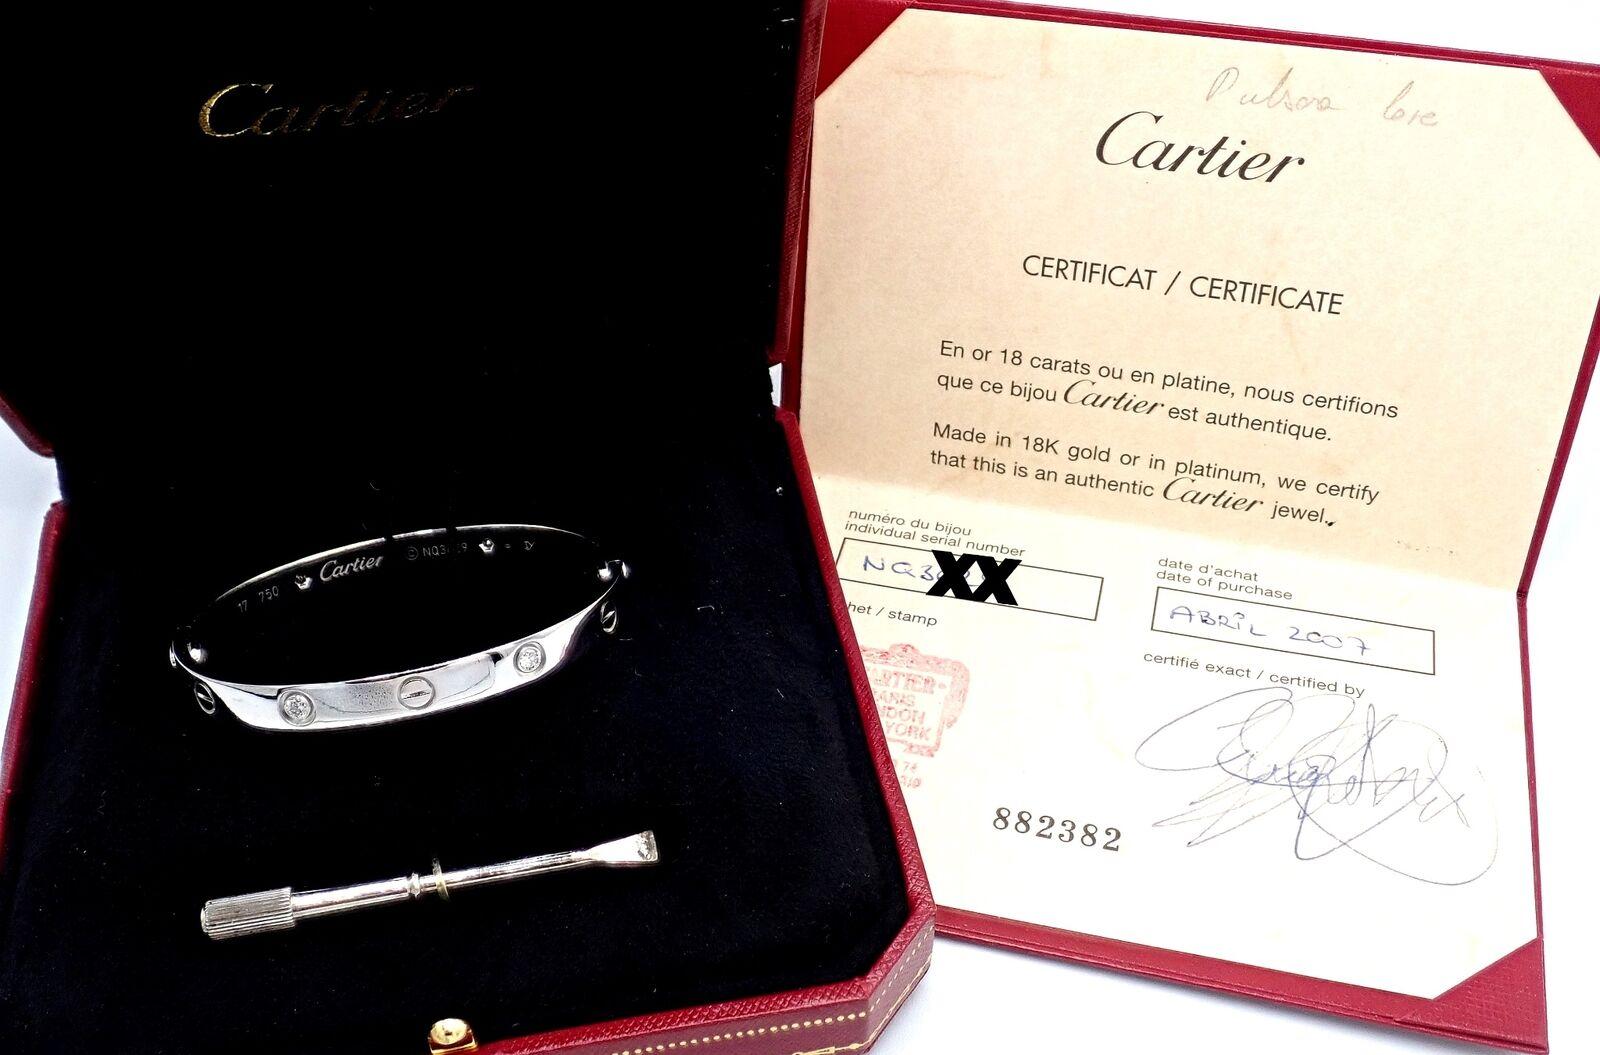 Bracelet en or blanc 18k Cartier LOVE, taille 17.
Avec 4 diamants ronds de taille brillante VS1 pureté, couleur G poids total .42ct
Ce bracelet est accompagné d'un certificat d'authenticité Cartier, d'une boîte Cartier et d'un tournevis.
Ce bracelet